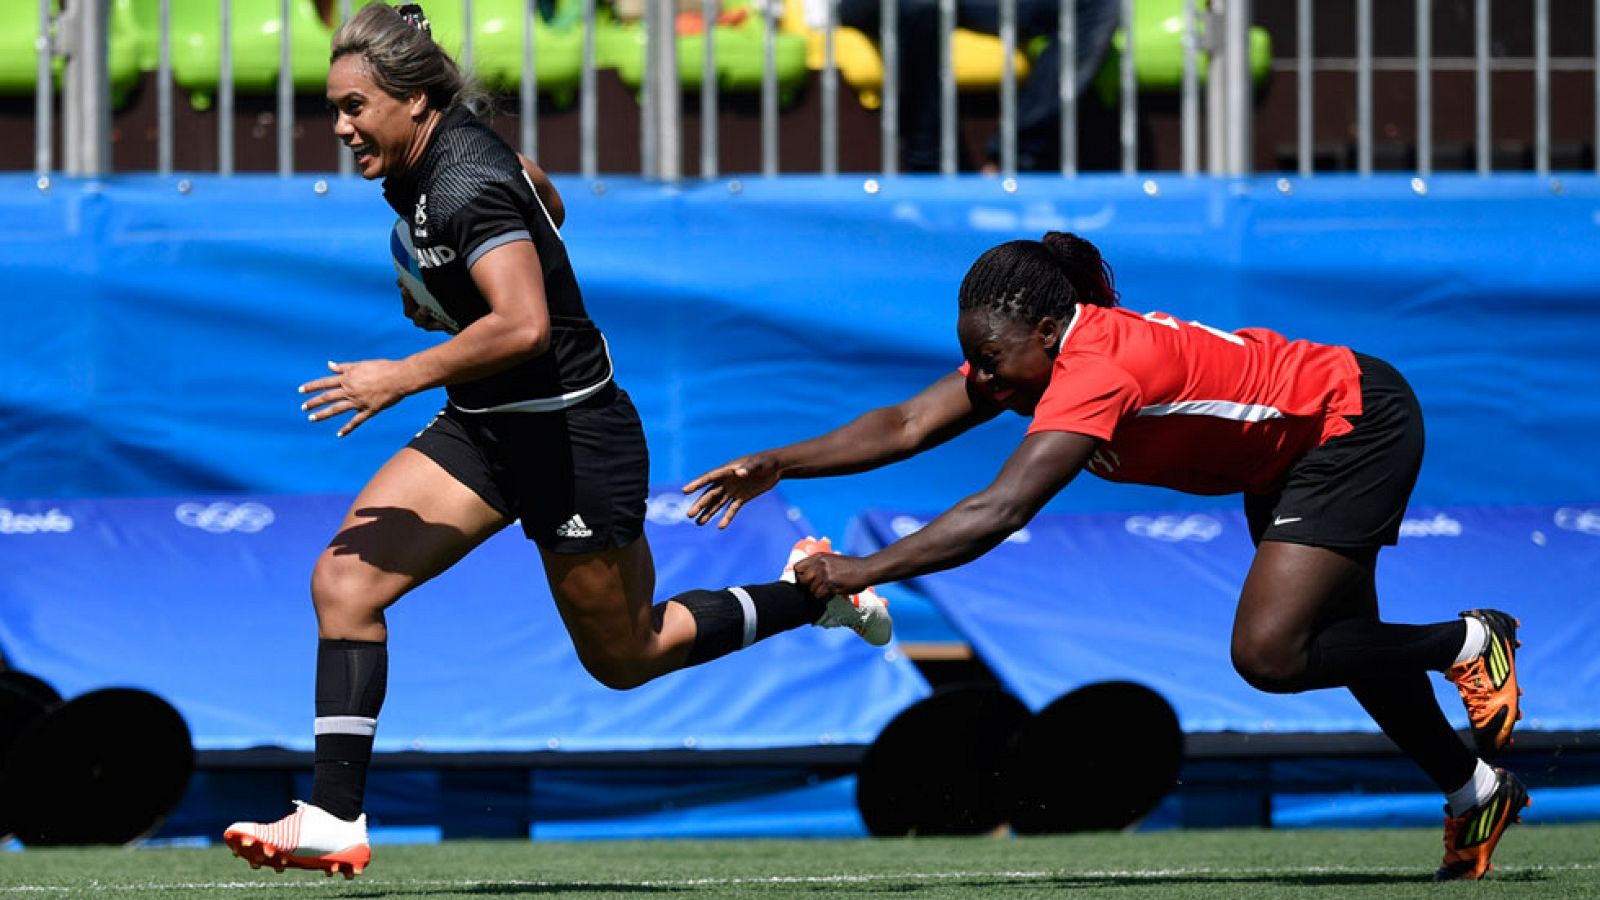 La selección española femenina de rugby 7 debutó en los Juegos de Río 2016 con una derrota por 7-24 ante Francia, en el partido inaugural de la competición.